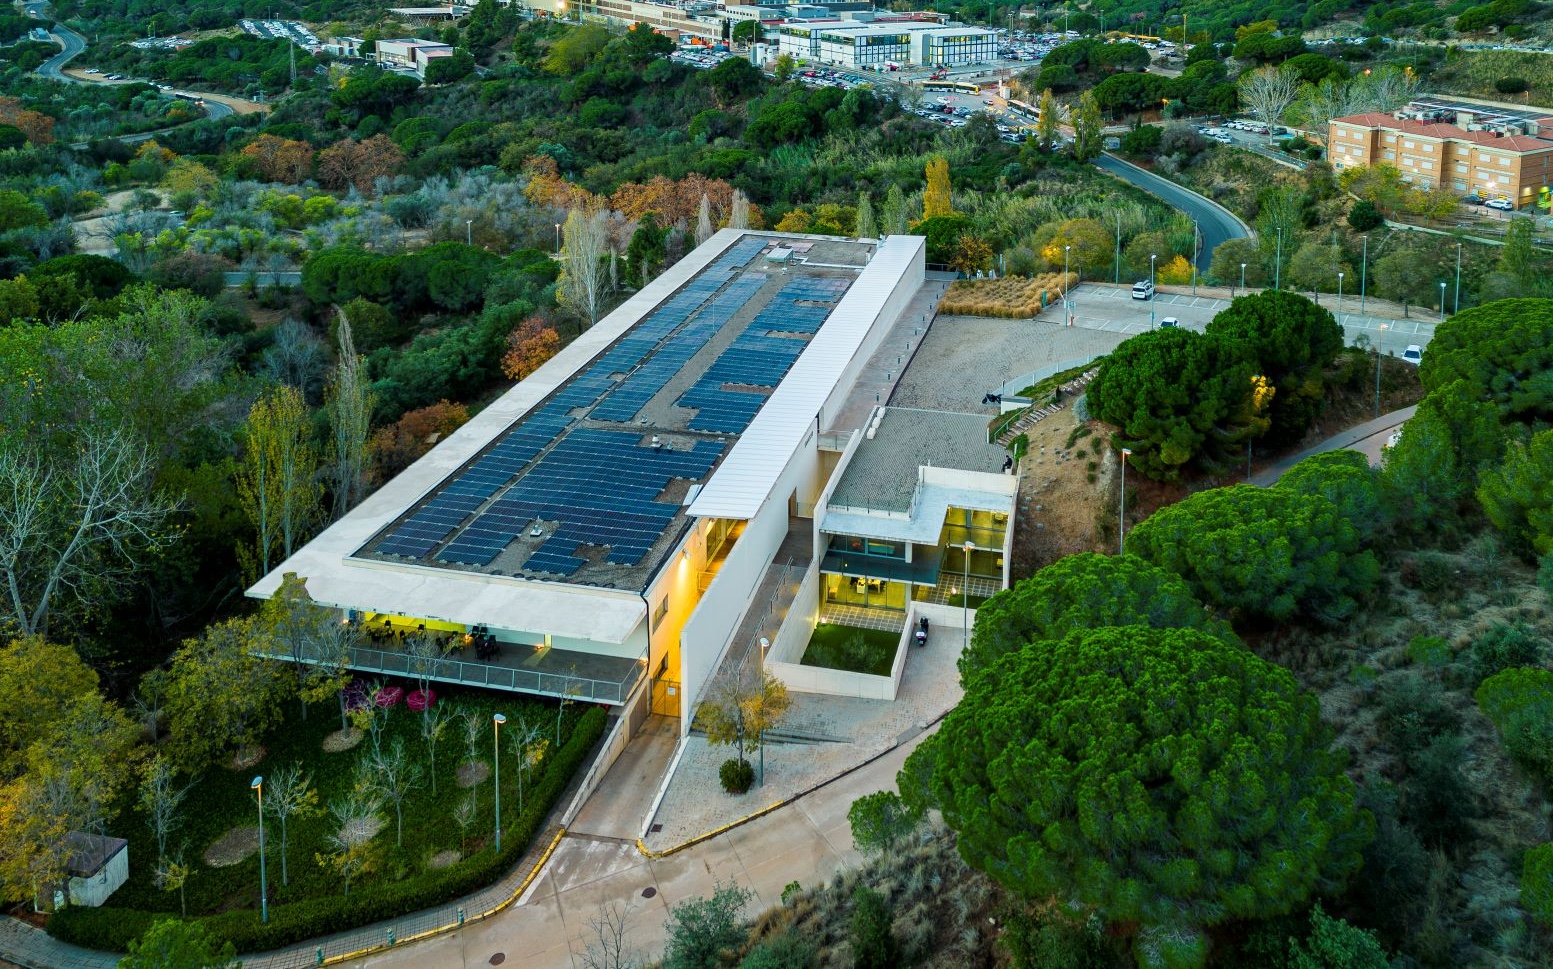 El Tanatorio de Badalona ha instalado 396 paneles fotovoltaicos que le permiten cubrir sus necesidades